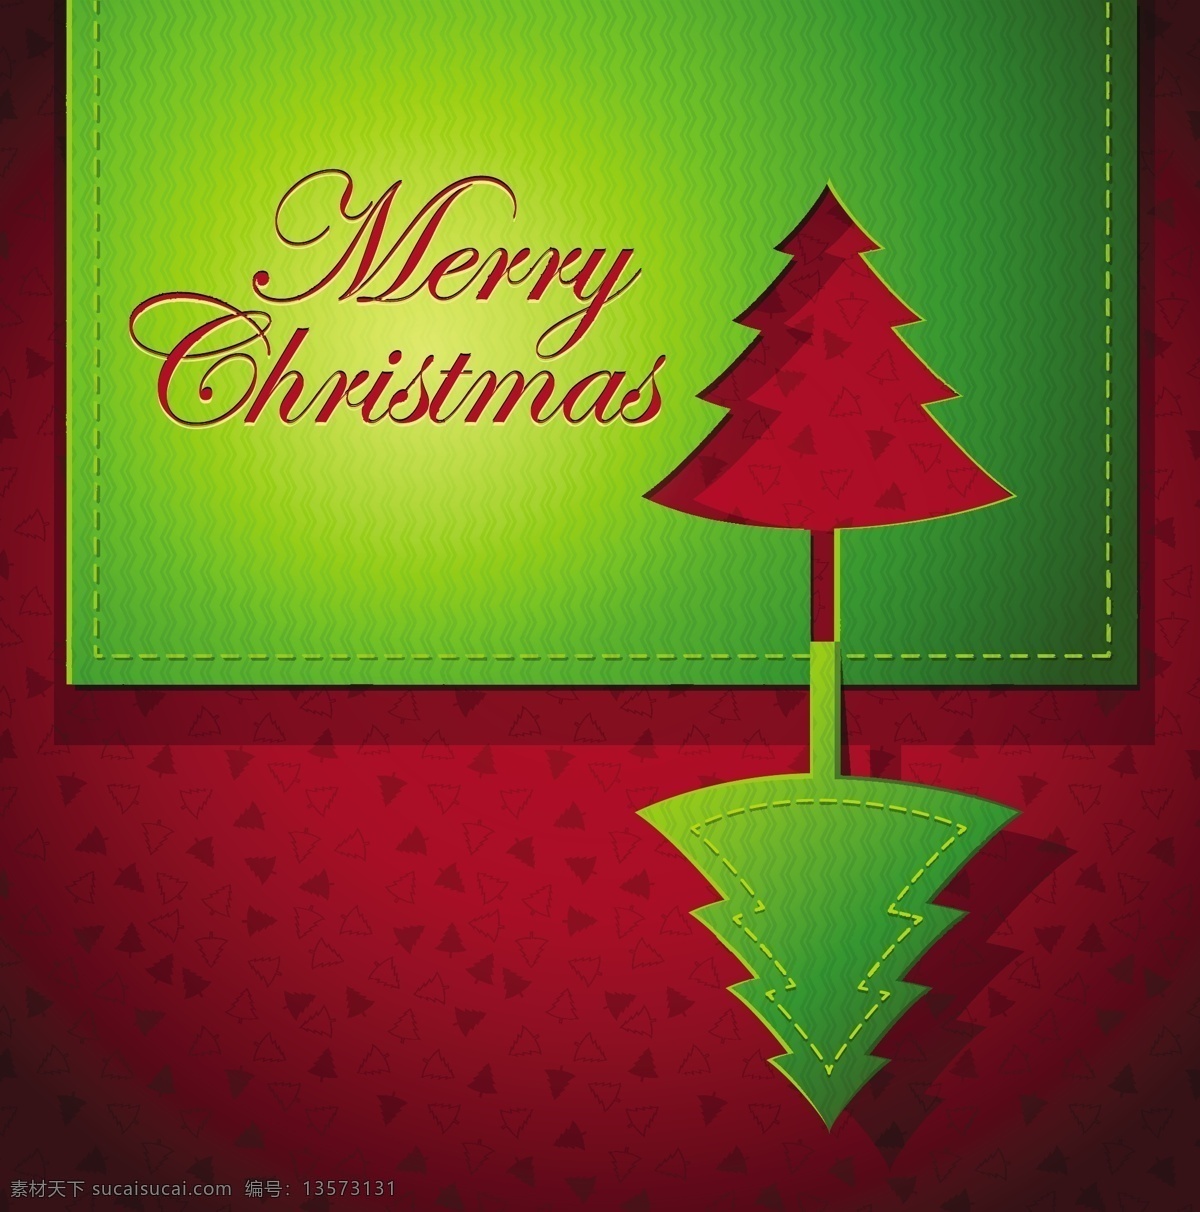 圣诞节 创意 贺卡 矢量 镂空 圣诞树 矢量素材 纸艺术 伊面 矢量图 其他矢量图